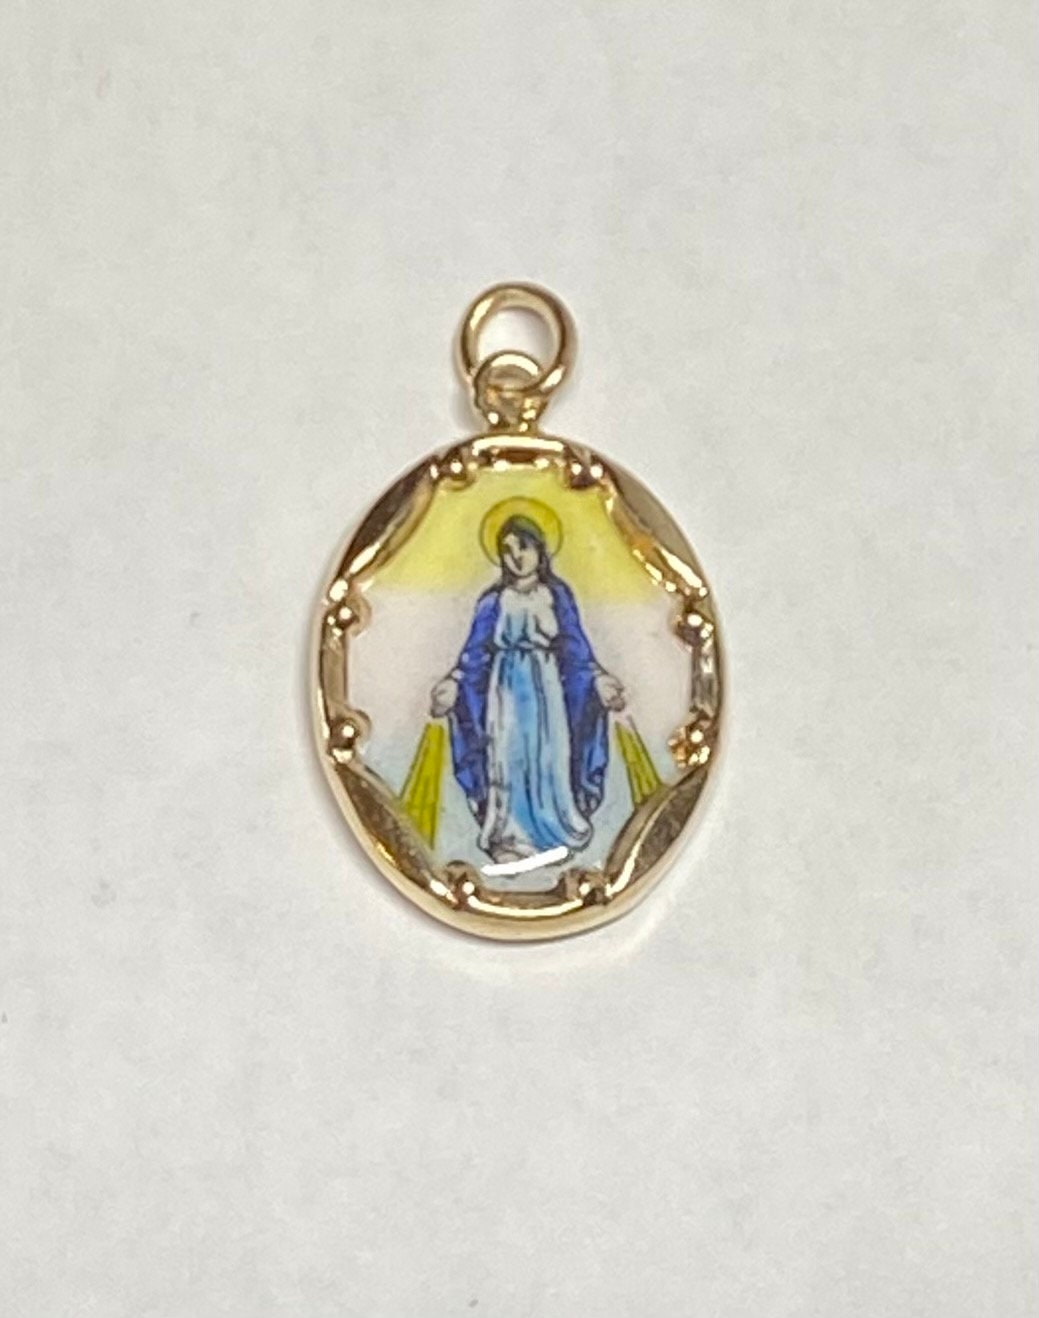 Hermosa Virgen María Inmaculada con la Medalla Milagrosa - rompecabezas en  línea